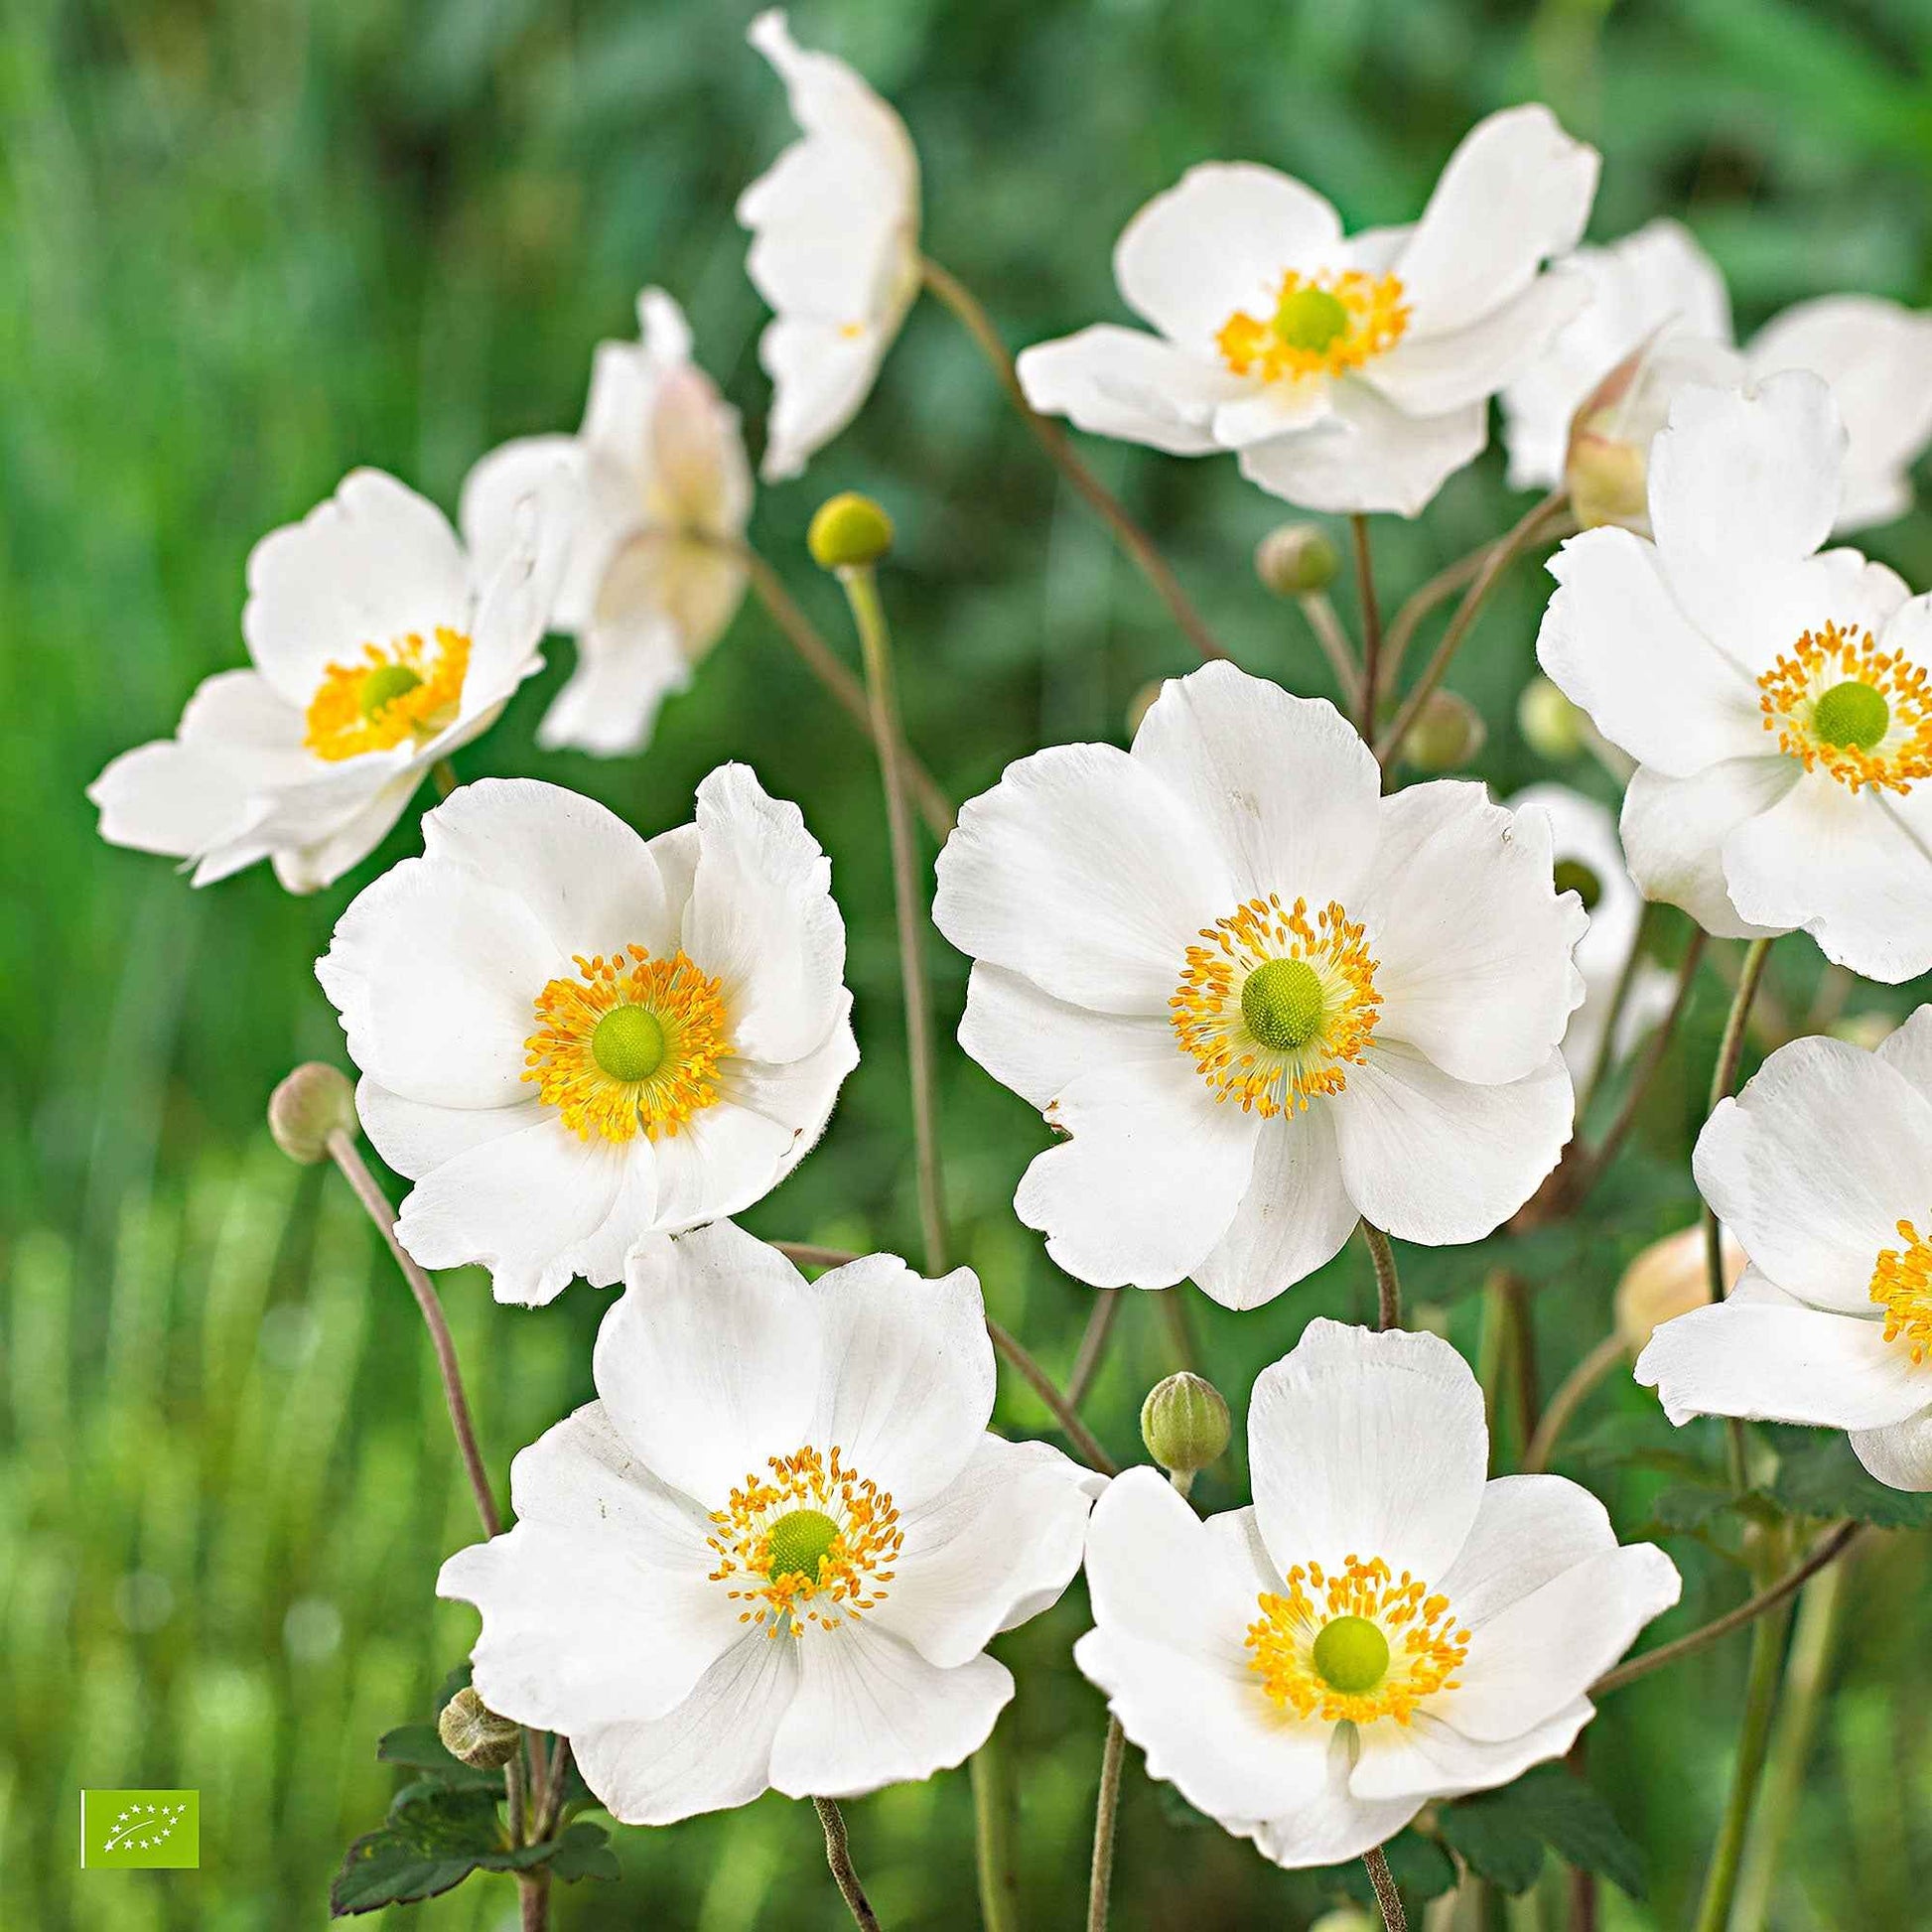 Achetez maintenant une plante vivace Anémone d'automne Anemone 'Honorine  Jobert' - Biologique blanc | Bakker.com